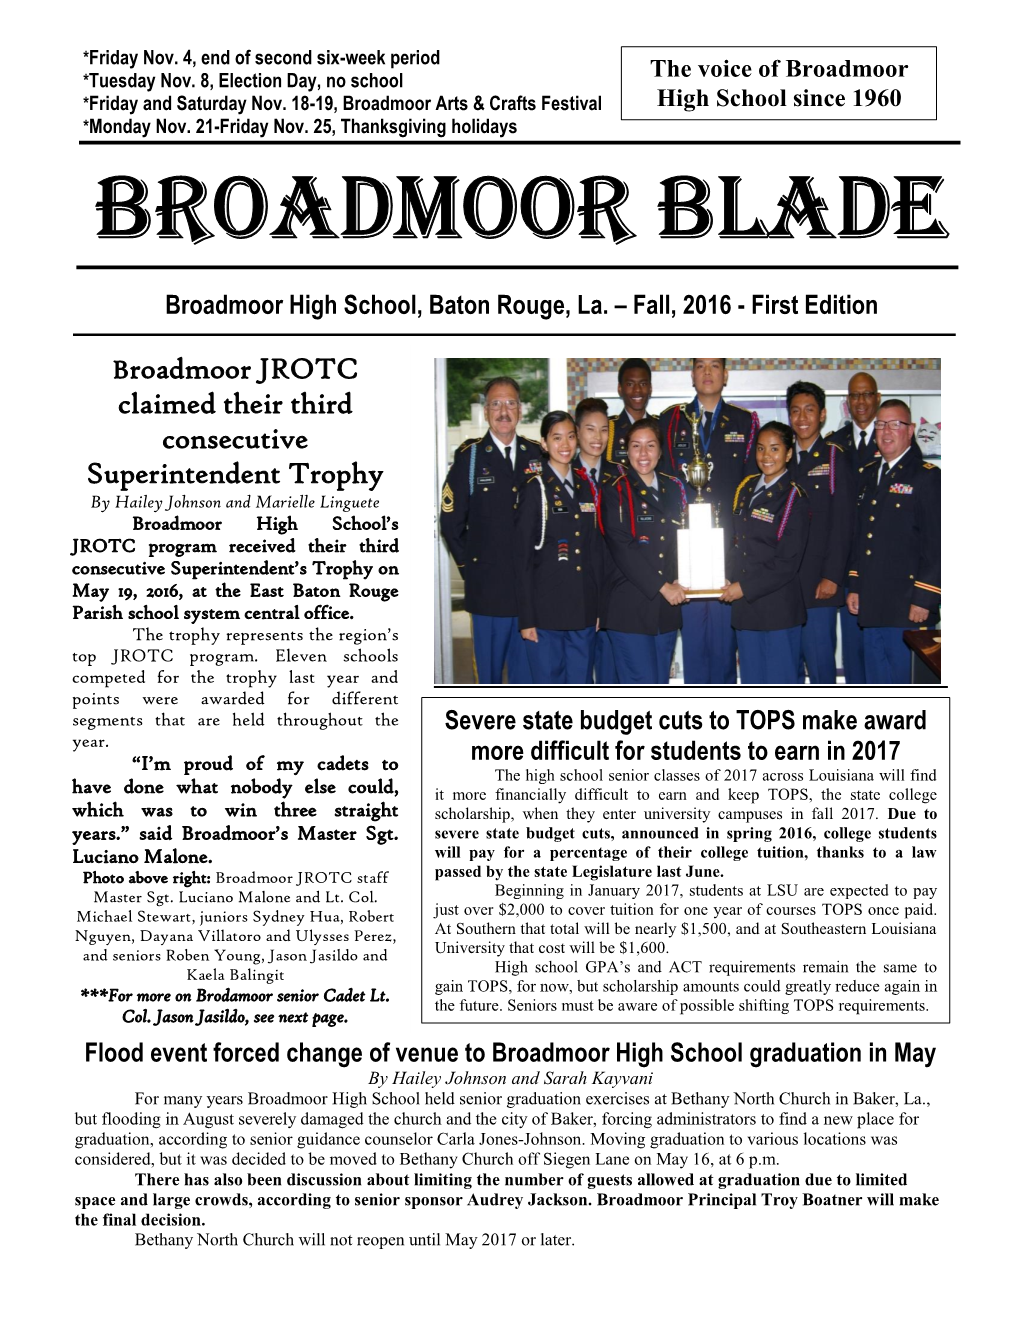 Broadmoor Blade